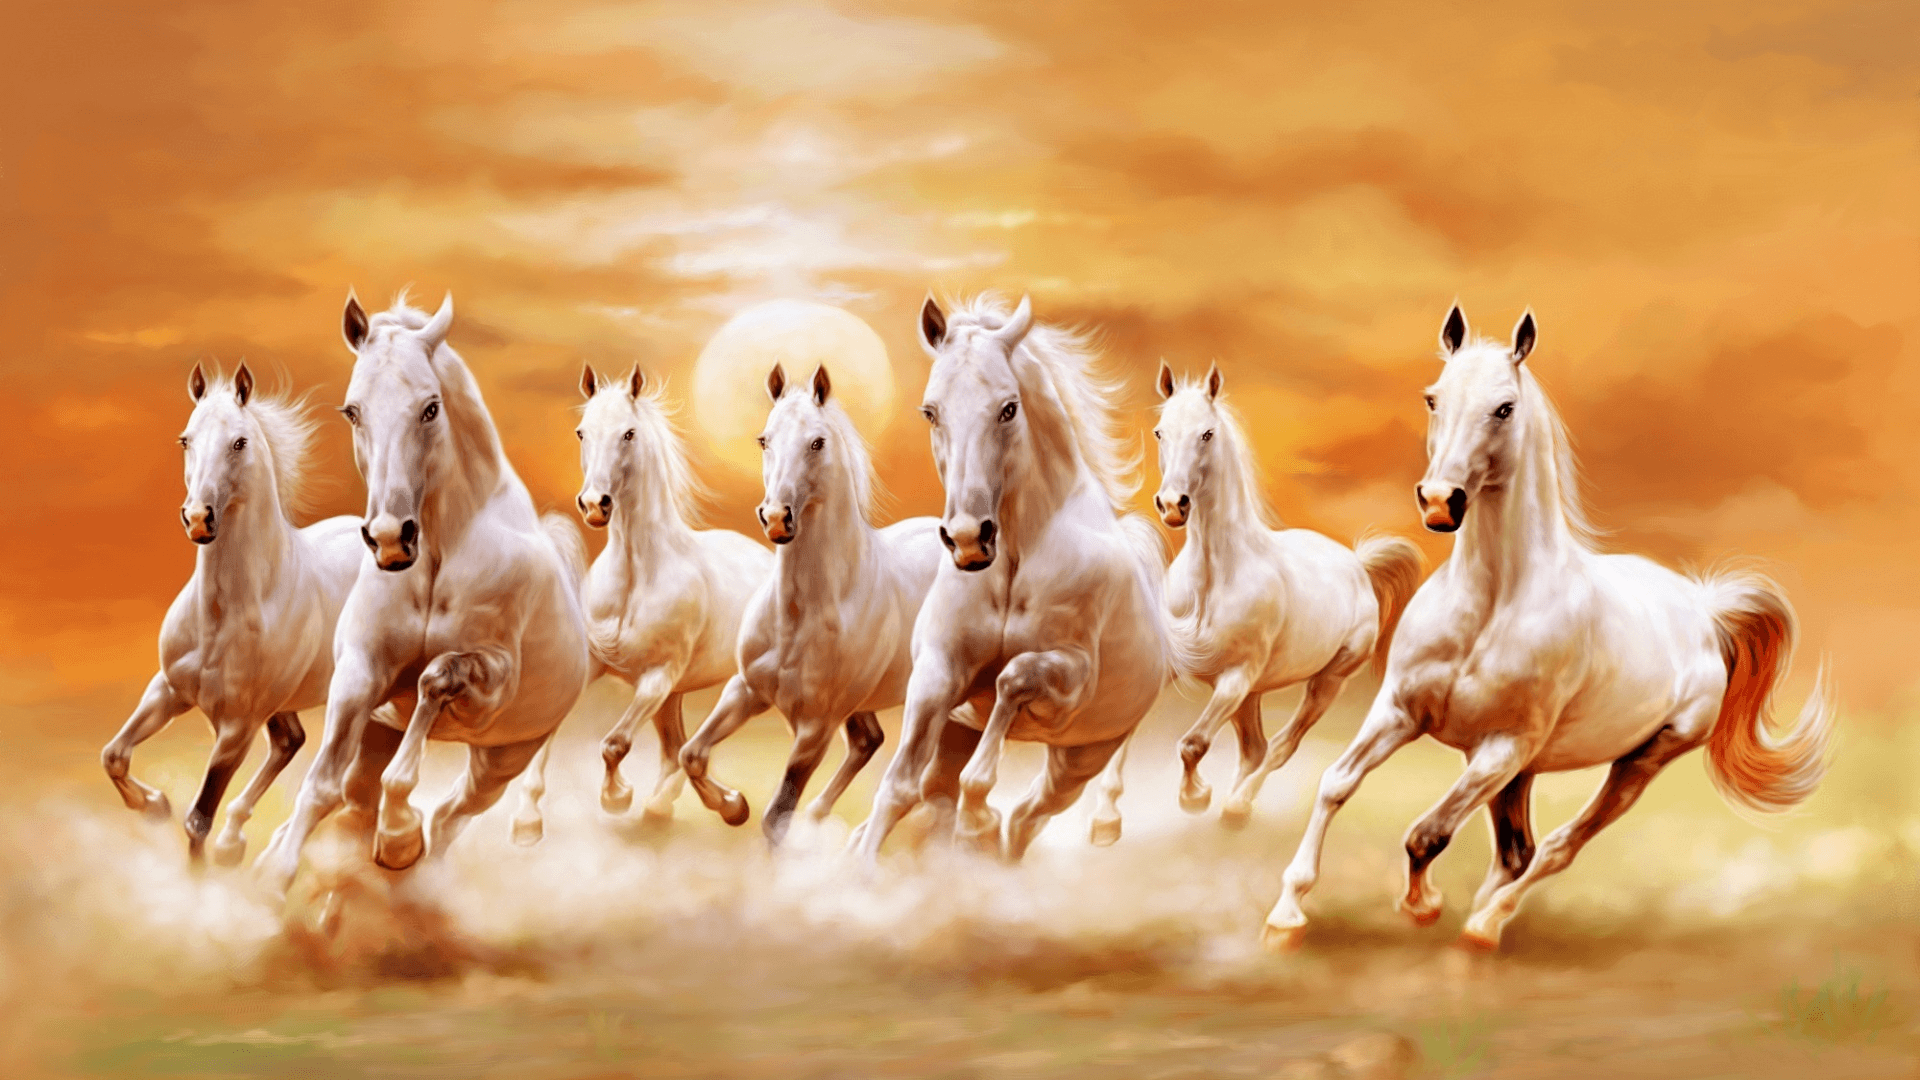 white horse HD white horse wallpaper for desktop